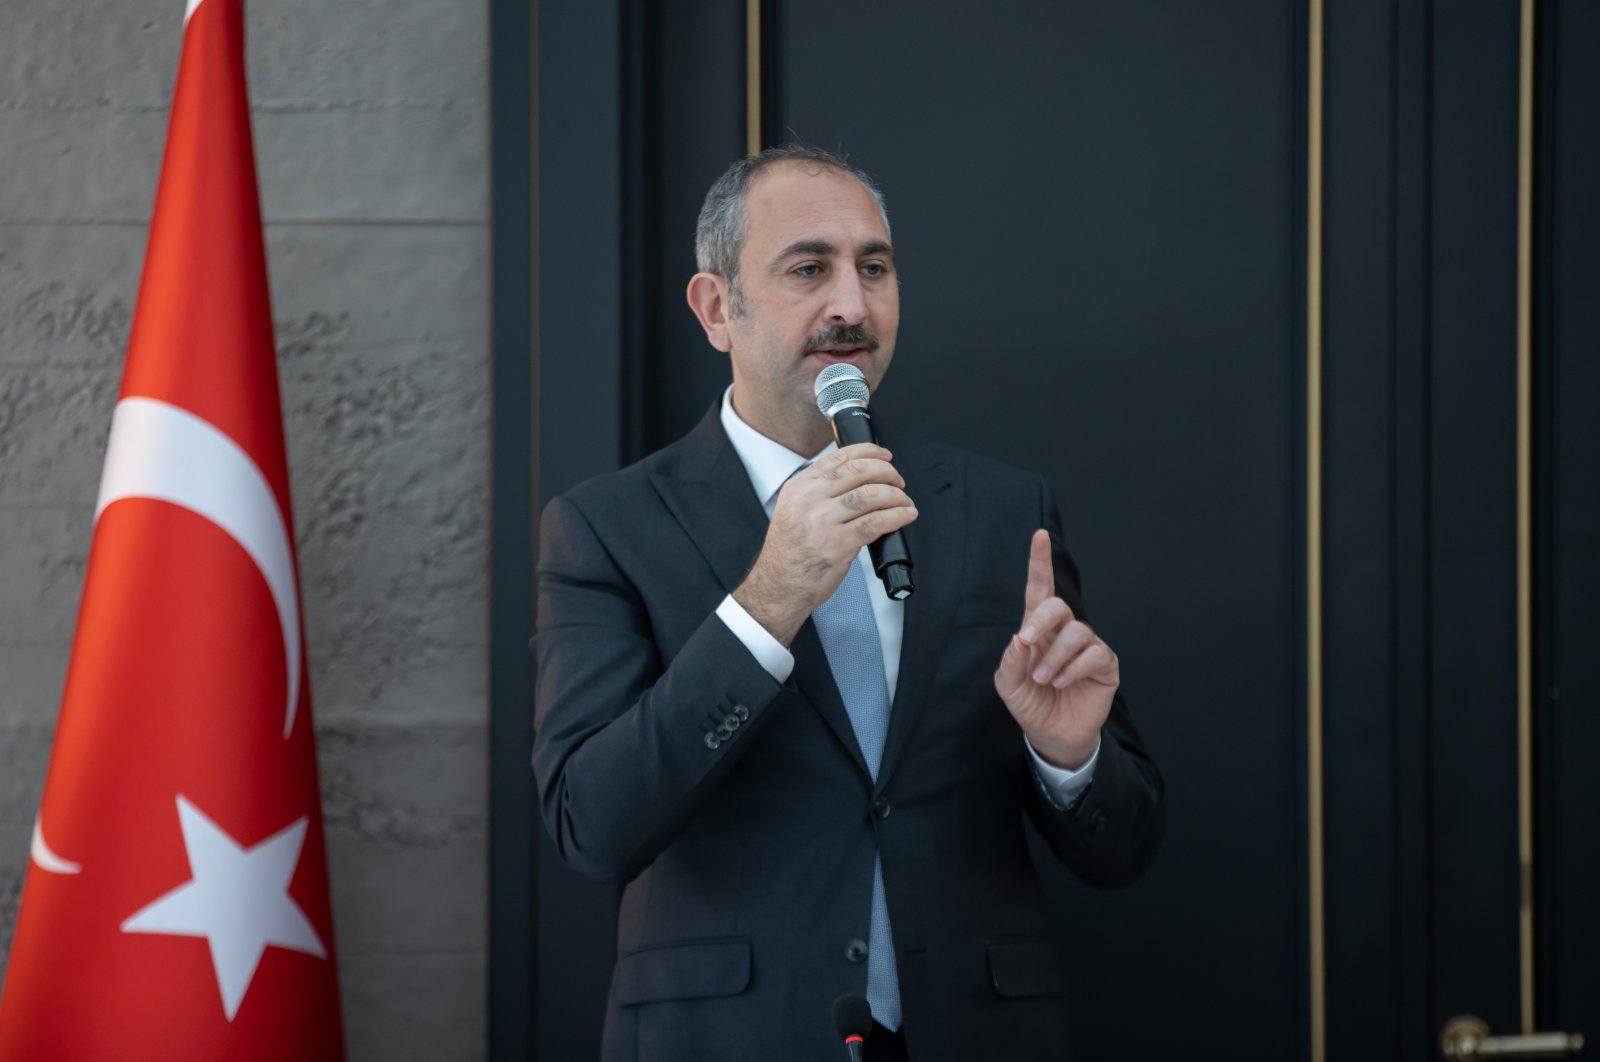 Turki membutuhkan konstitusi baru yang demokratis dan sipil: Menteri Gül